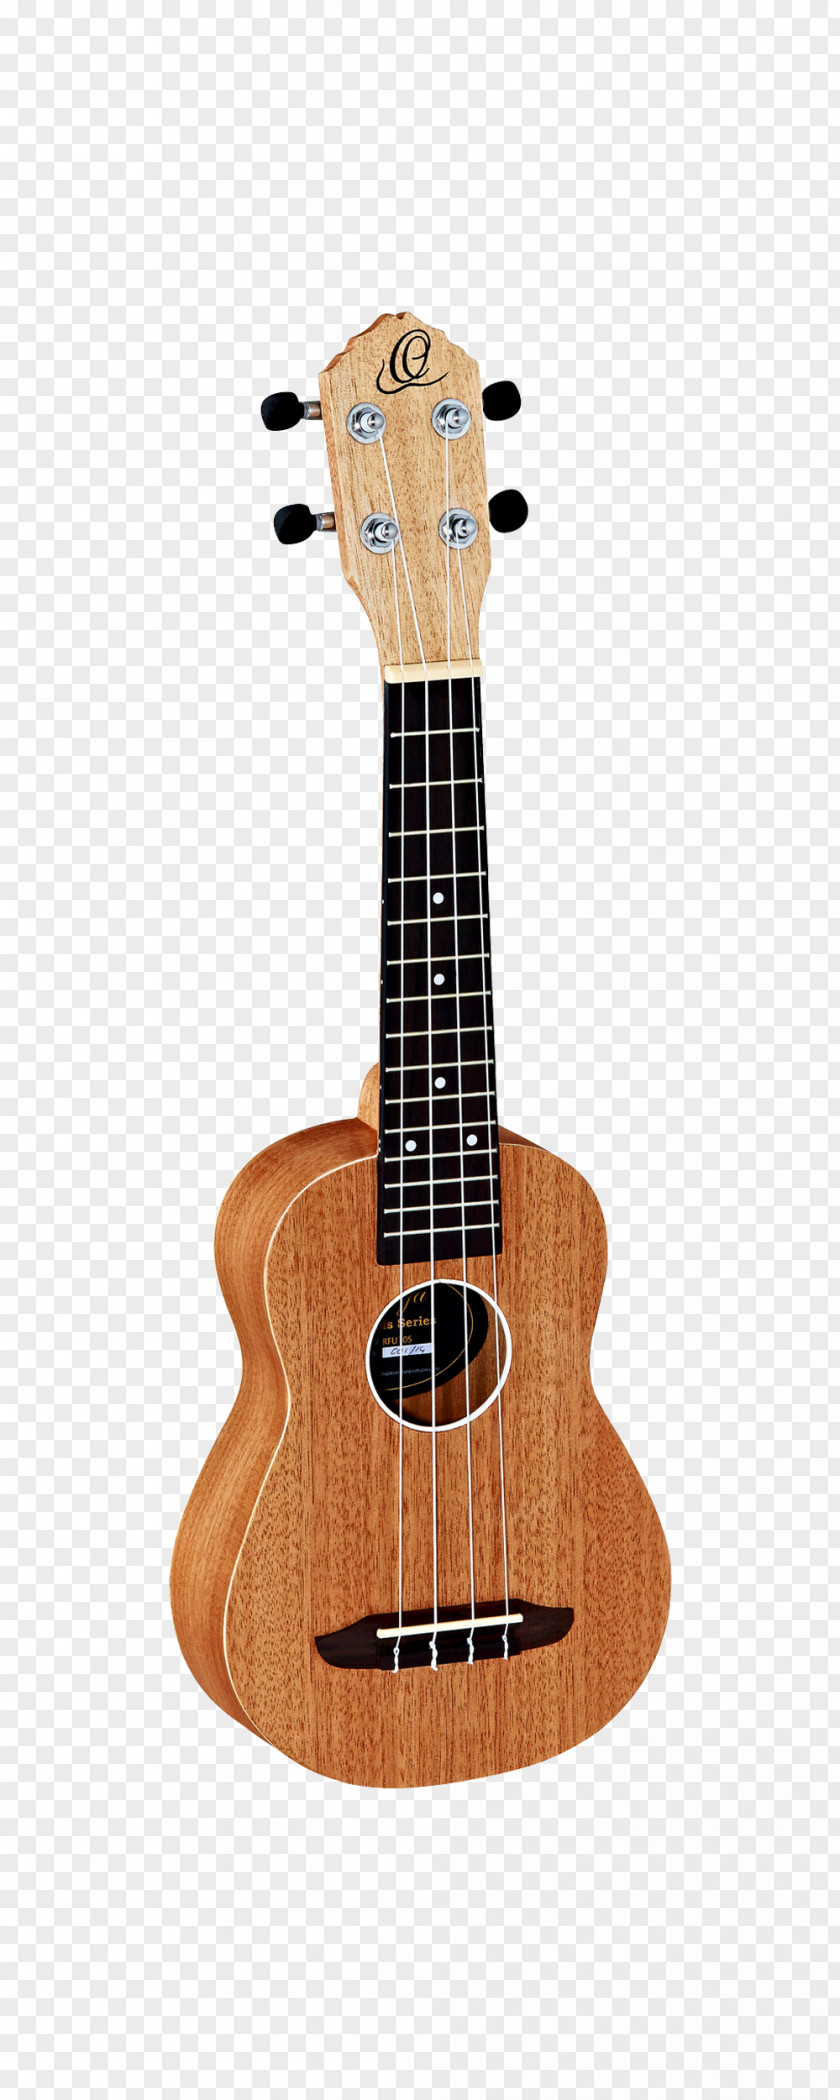 Amancio Ortega Ukulele Guitar Musical Instruments Tonewood Seagull PNG